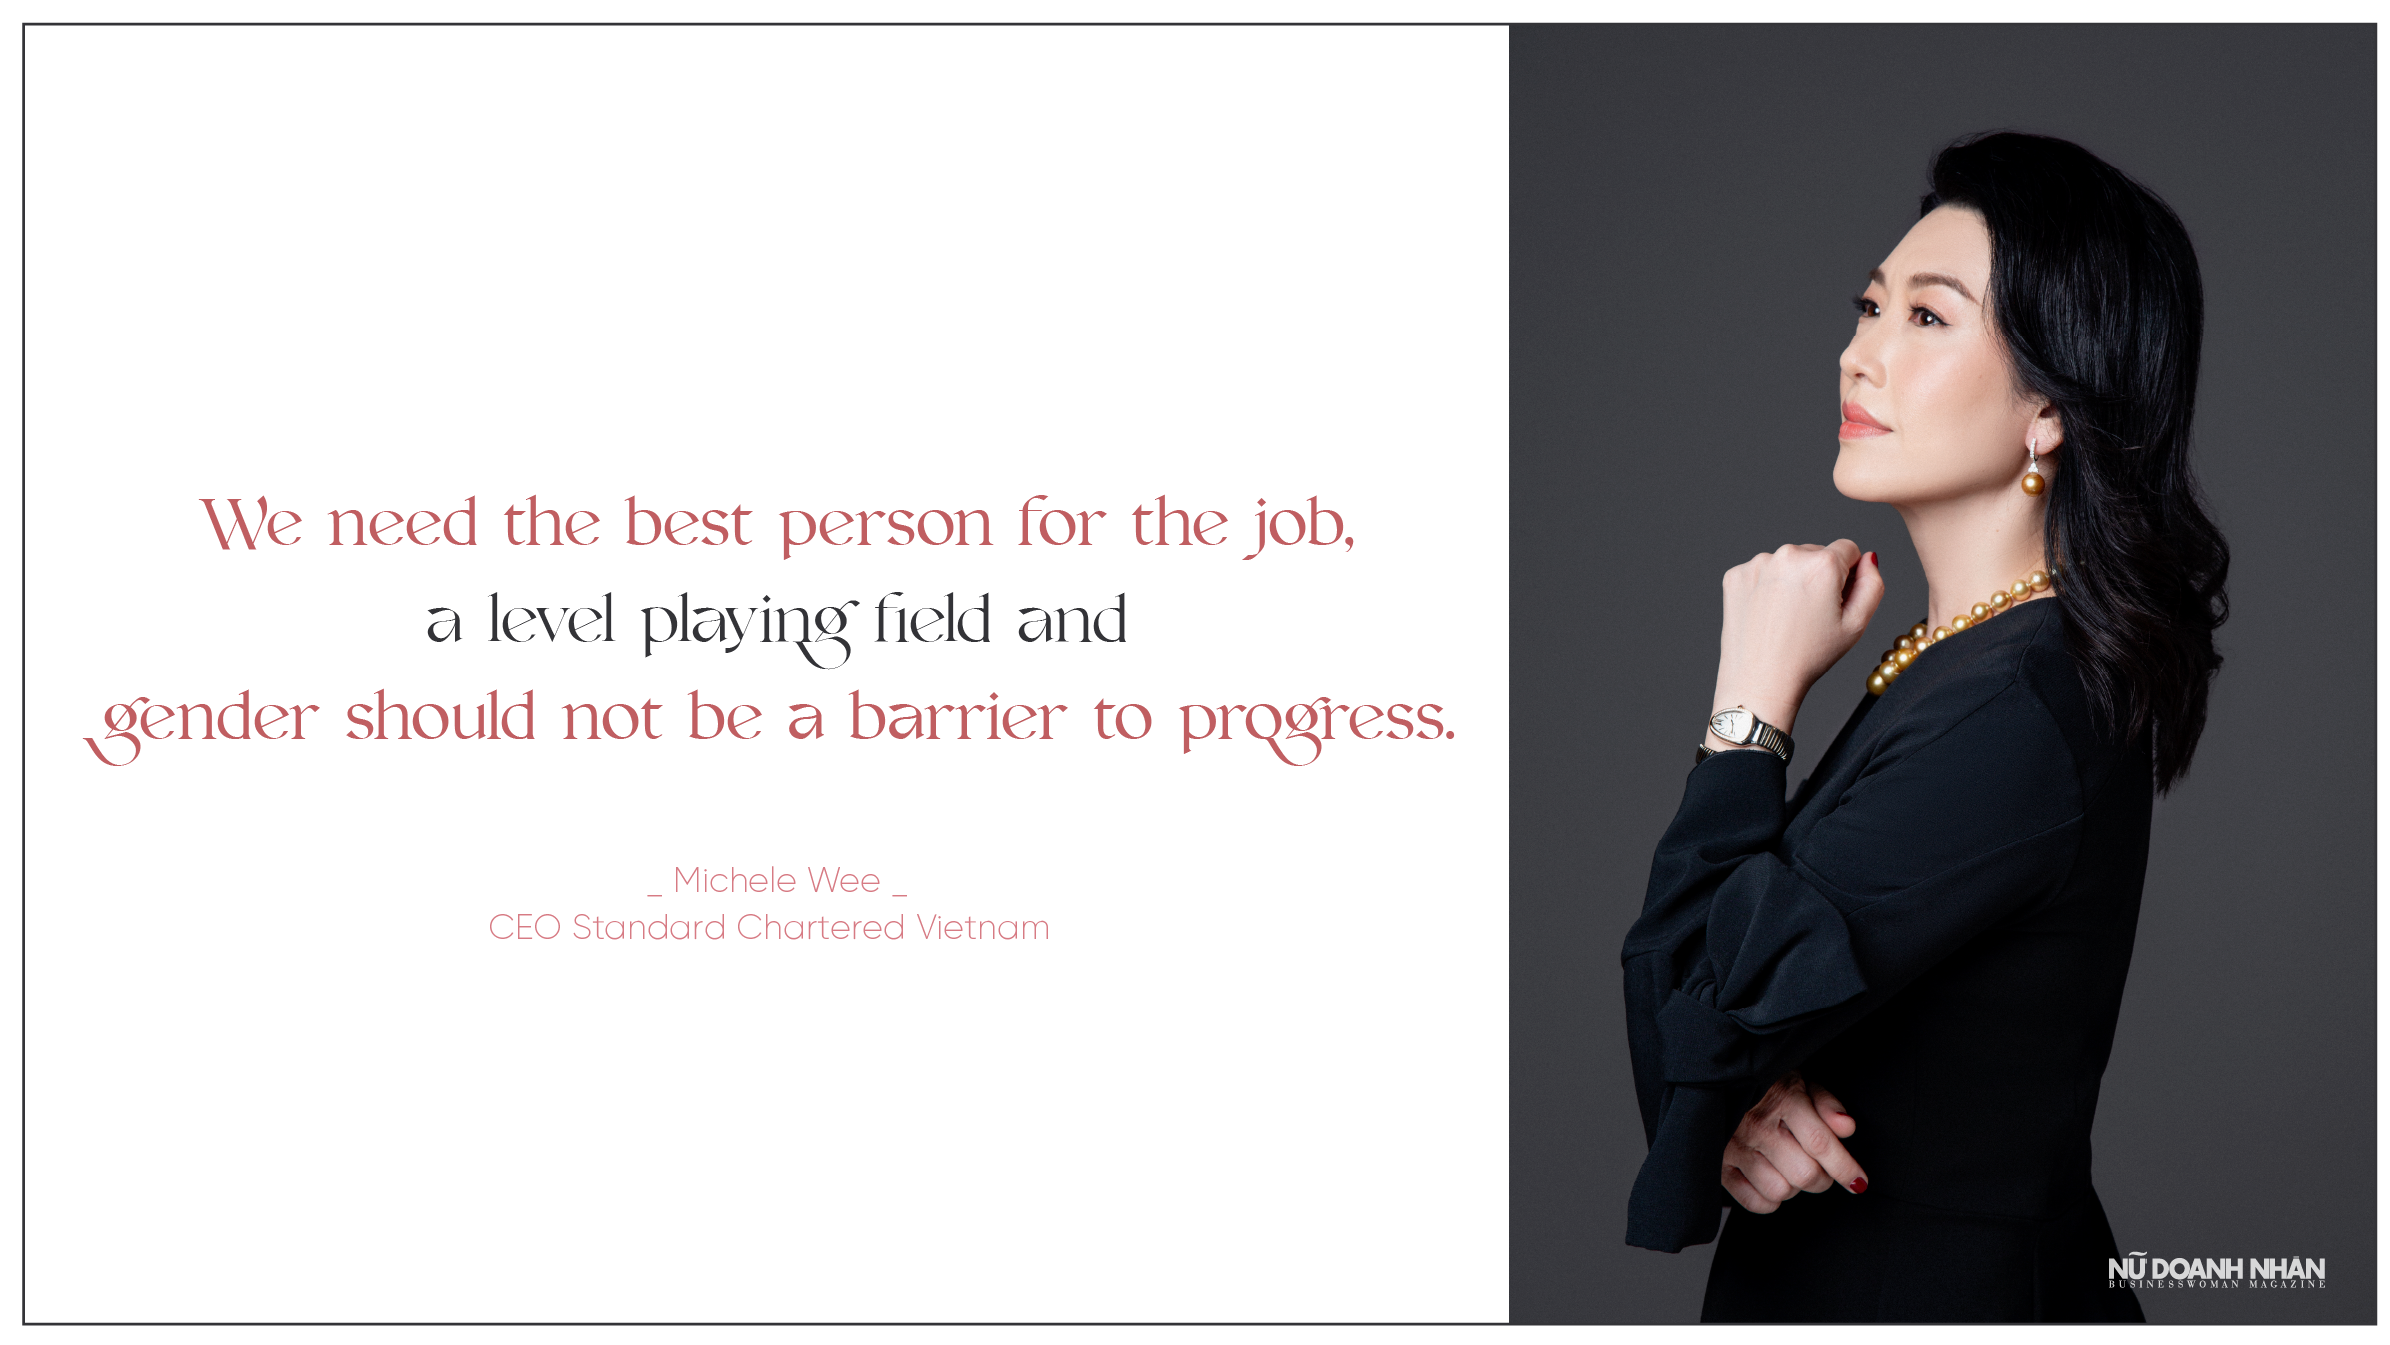 Phỏng vấn CEO Standard Chartered Vietnam - Michele Wee: "Dù bạn là nam hay nữ, công việc luôn cần người tốt nhất"